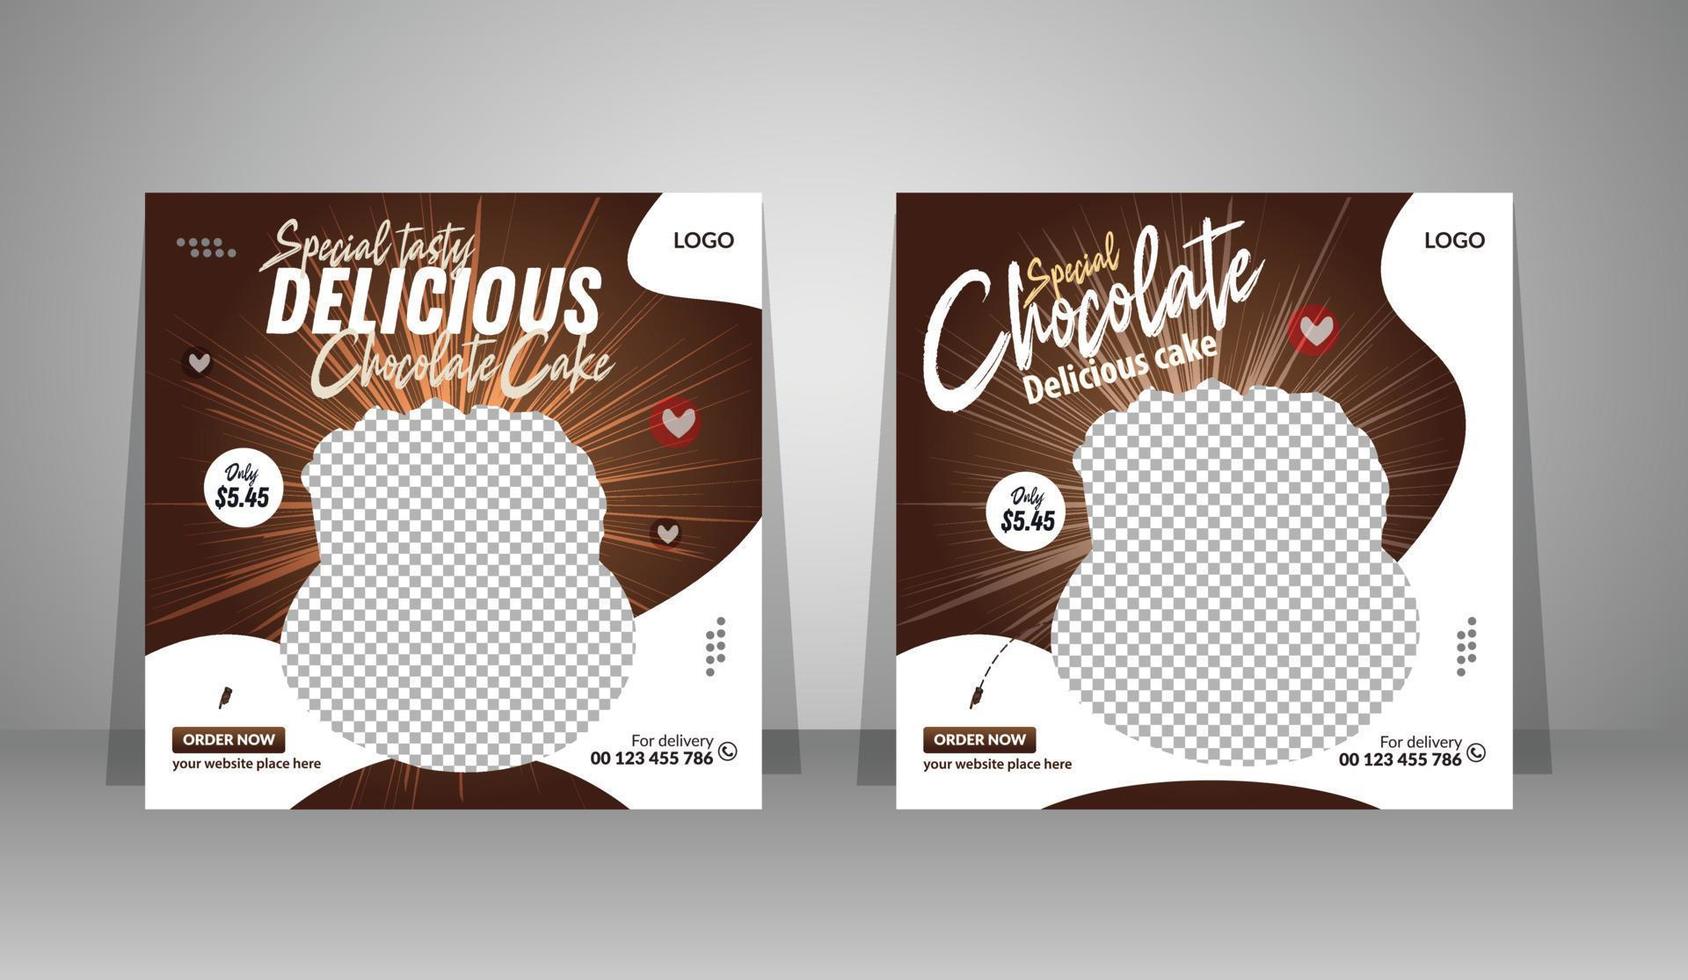 publicación de banner de pastel de chocolate delicioso en redes sociales vector